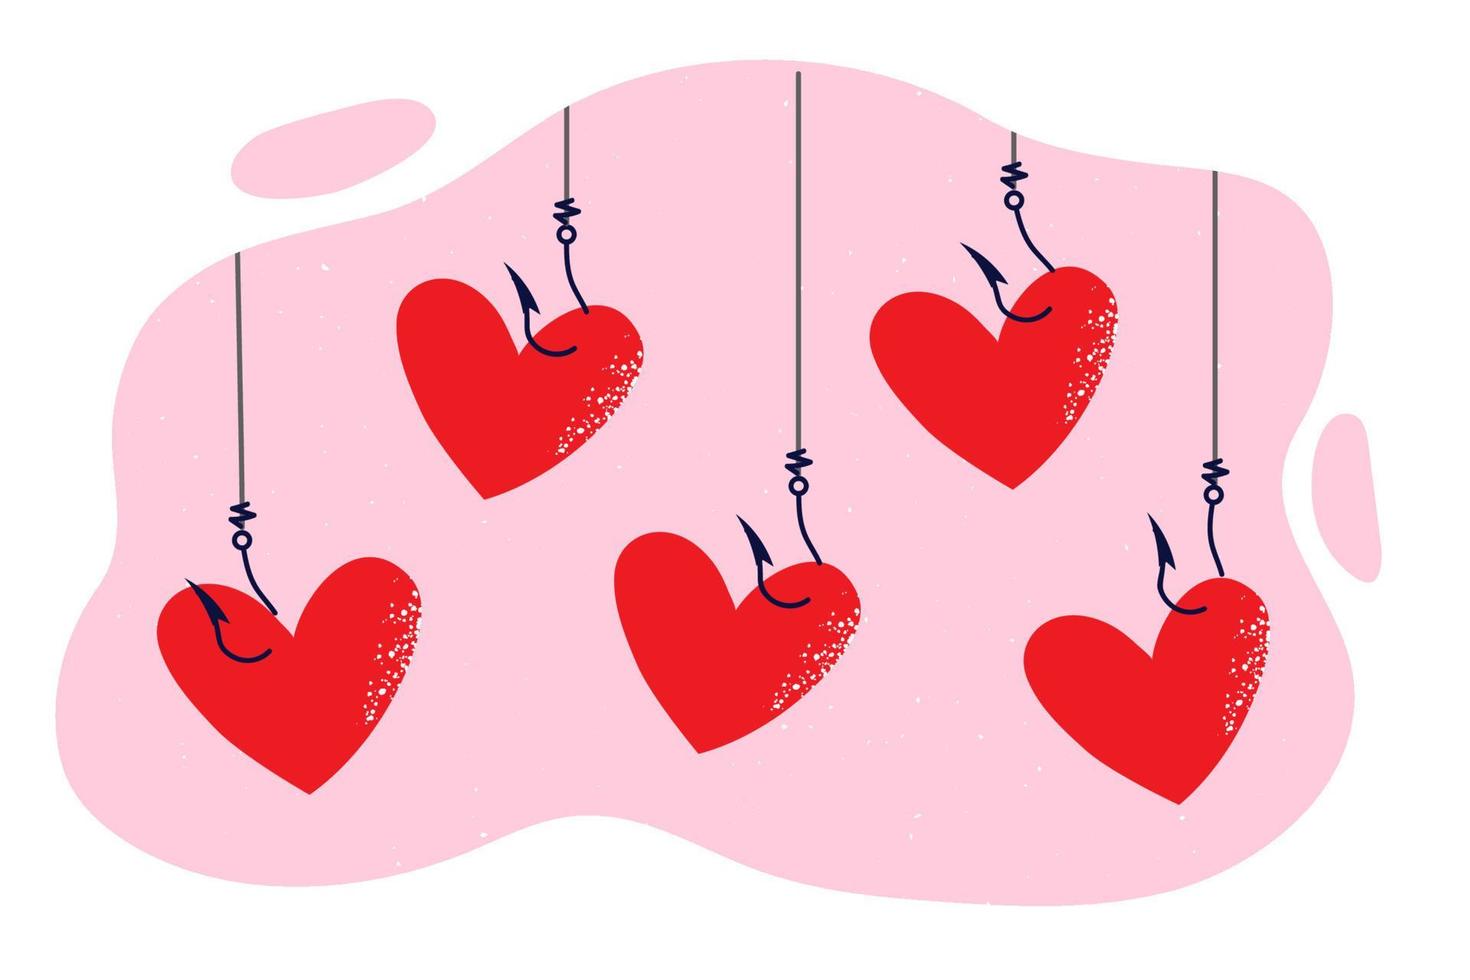 rouge cœurs pendaison sur crochets de pêche tiges comme métaphore pour pièges pour gens cherchant romantique des relations et l'amour Connexions. concept de découverte âme camarade pour romantique des relations et mariage vecteur